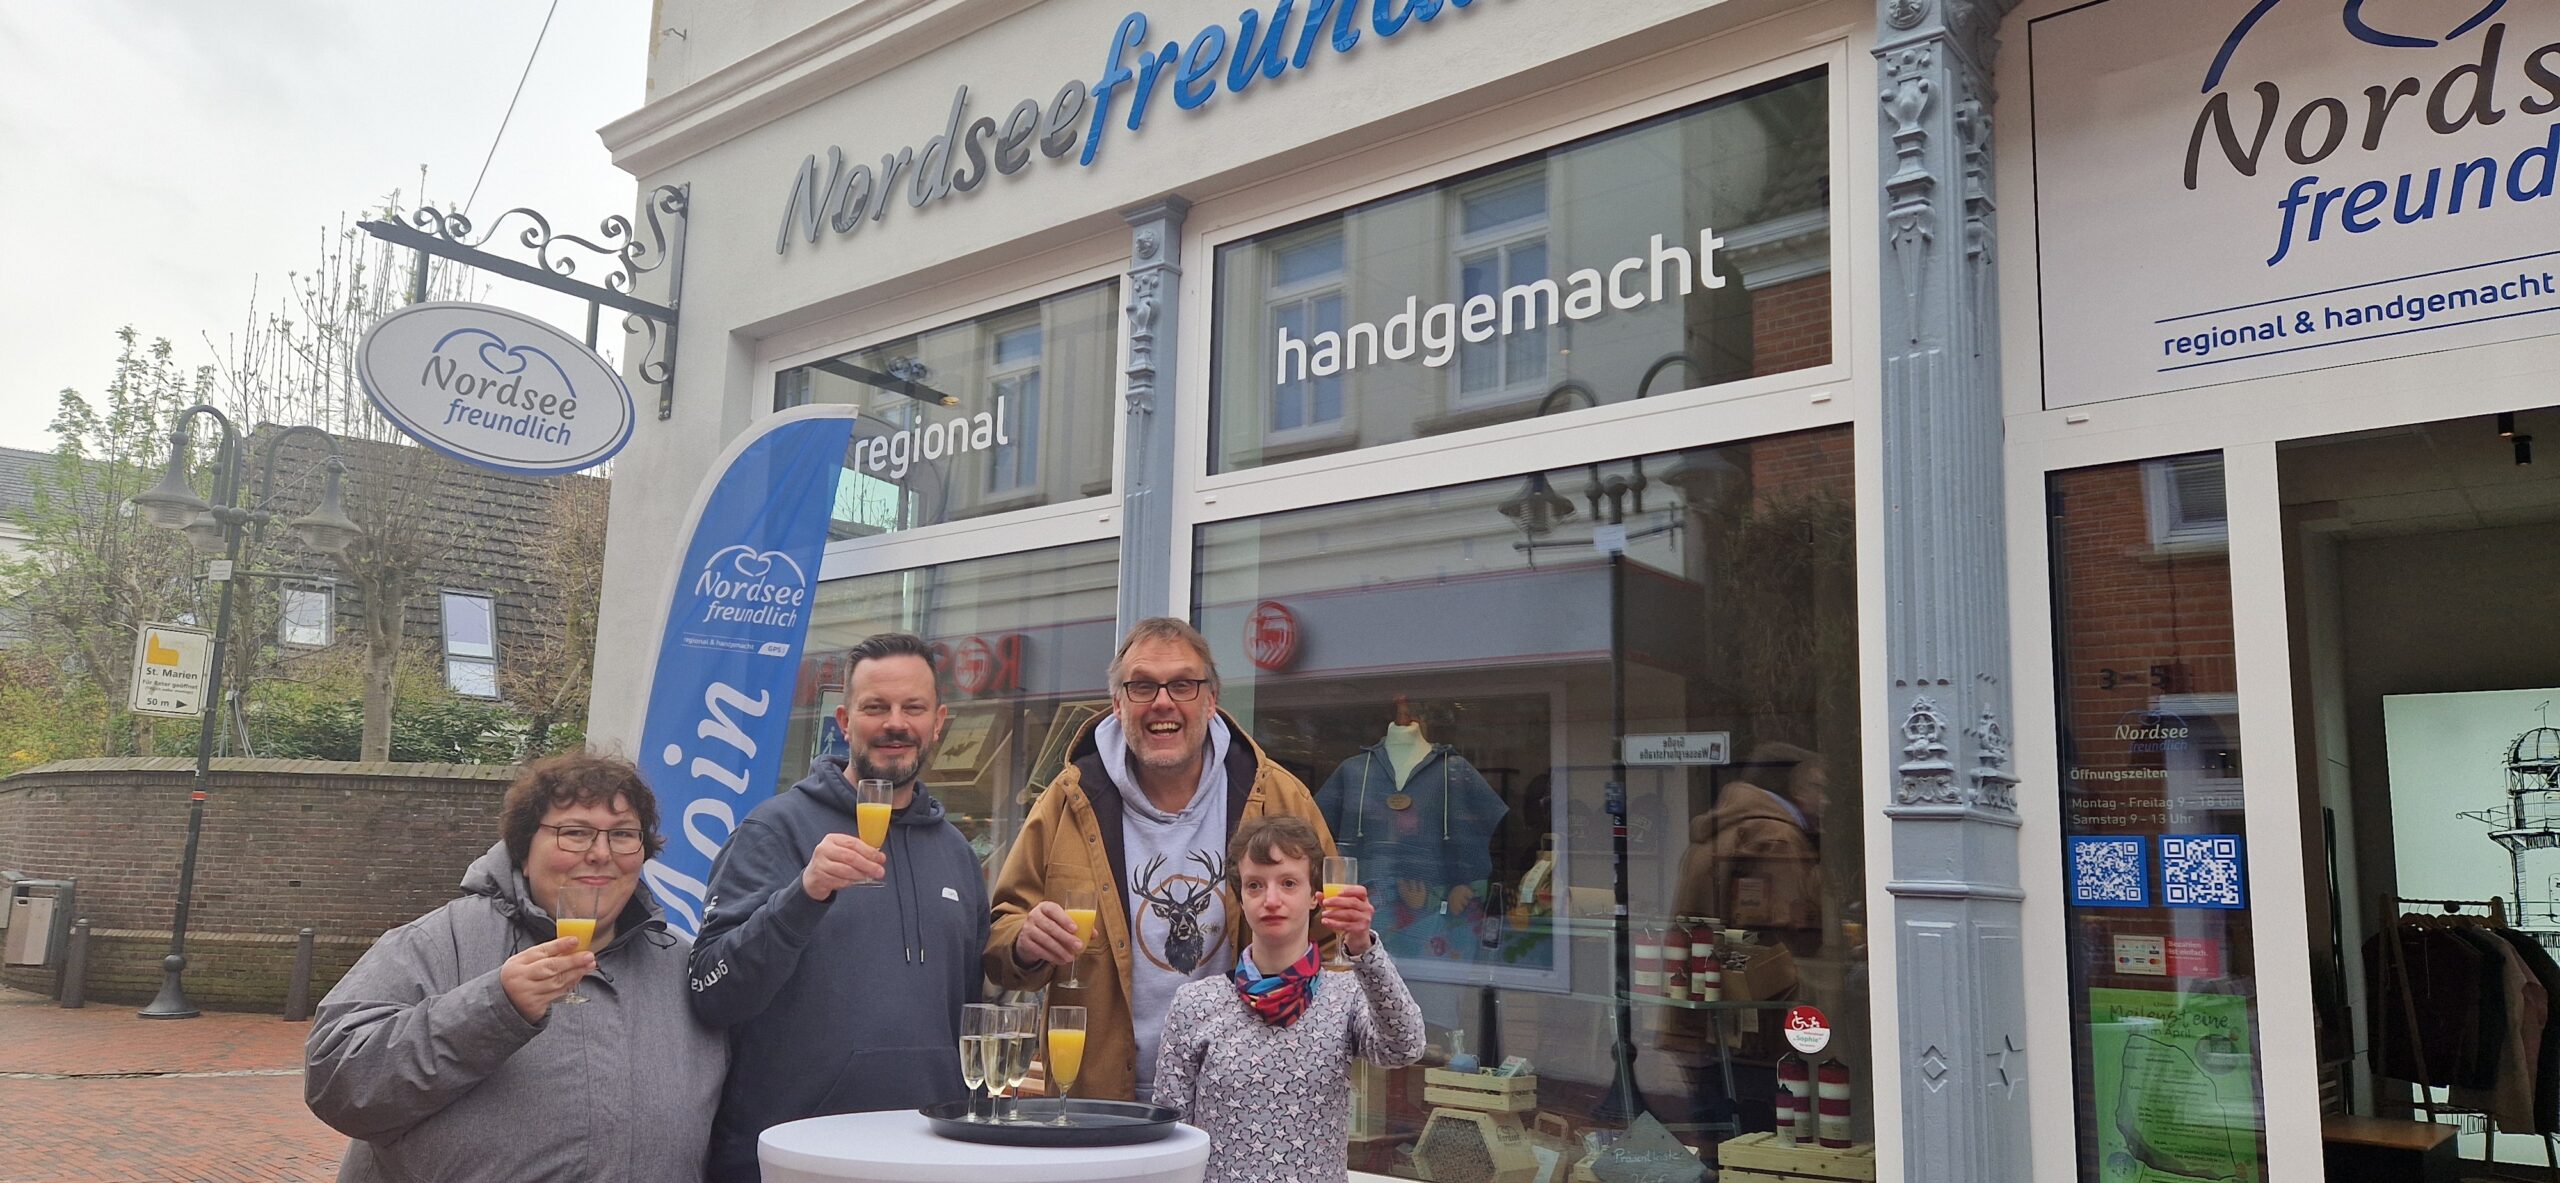 Geschäftsführer von der GPS Klaus Puschmann, ein GPS Mitarbeiter und zwei Frauen sind draußen vor dem GPS Laden "Nordseefreundlich". Alle stoßen mit einem Glas Orangensaft auf ein bestehendes Jahr des GPS Ladens "Nordseefreundlich".